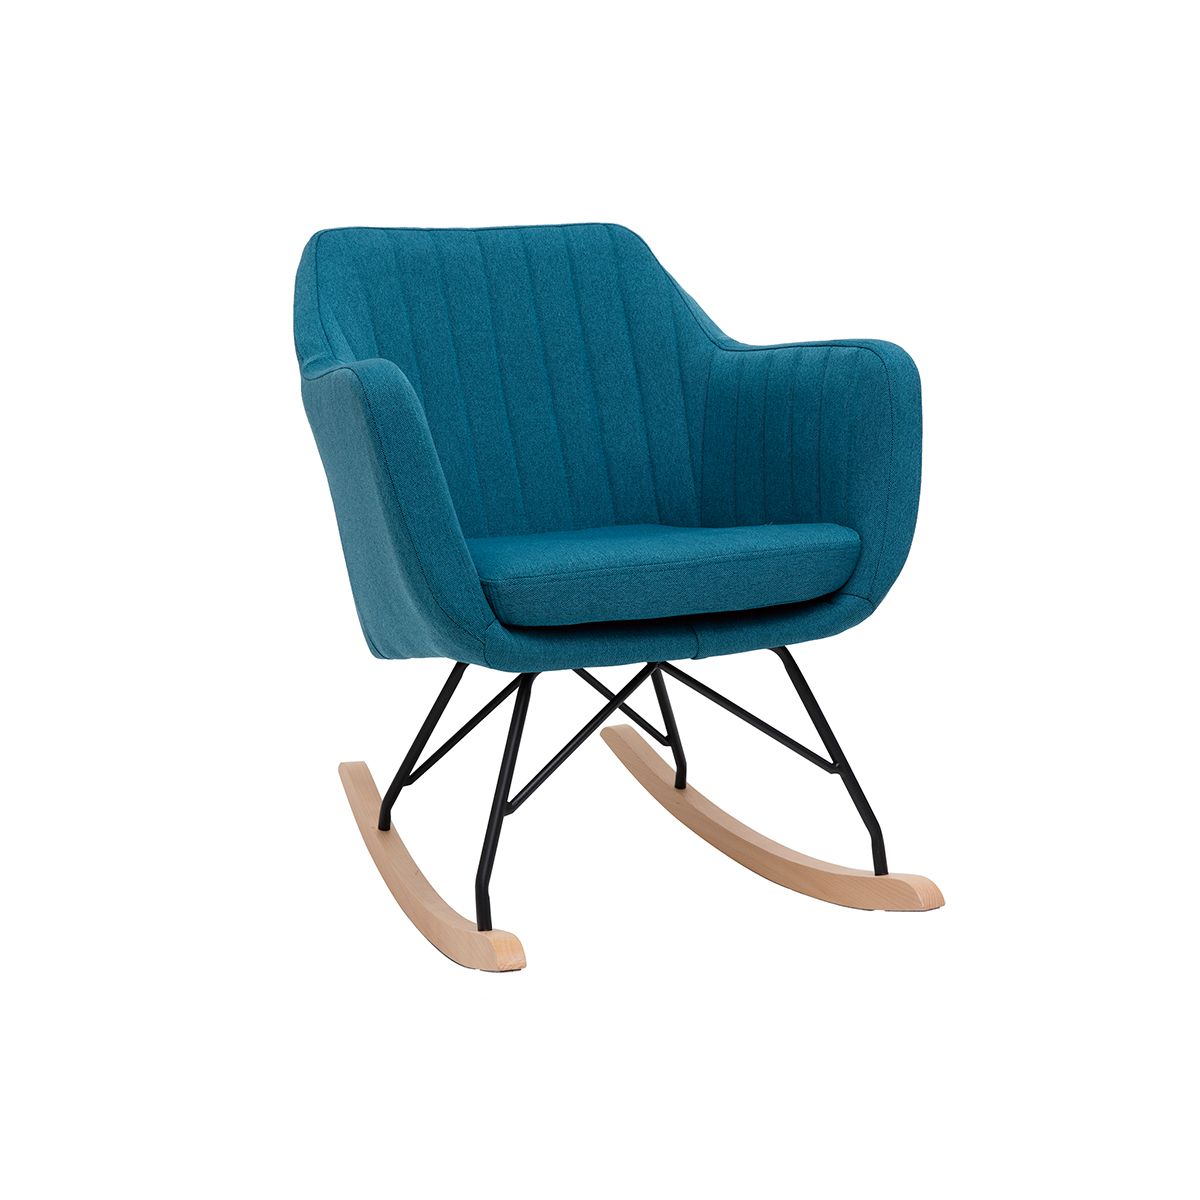 Rocking chair scandinave en tissu bleu canard, métal noir et bois clair ALEYNA vue1